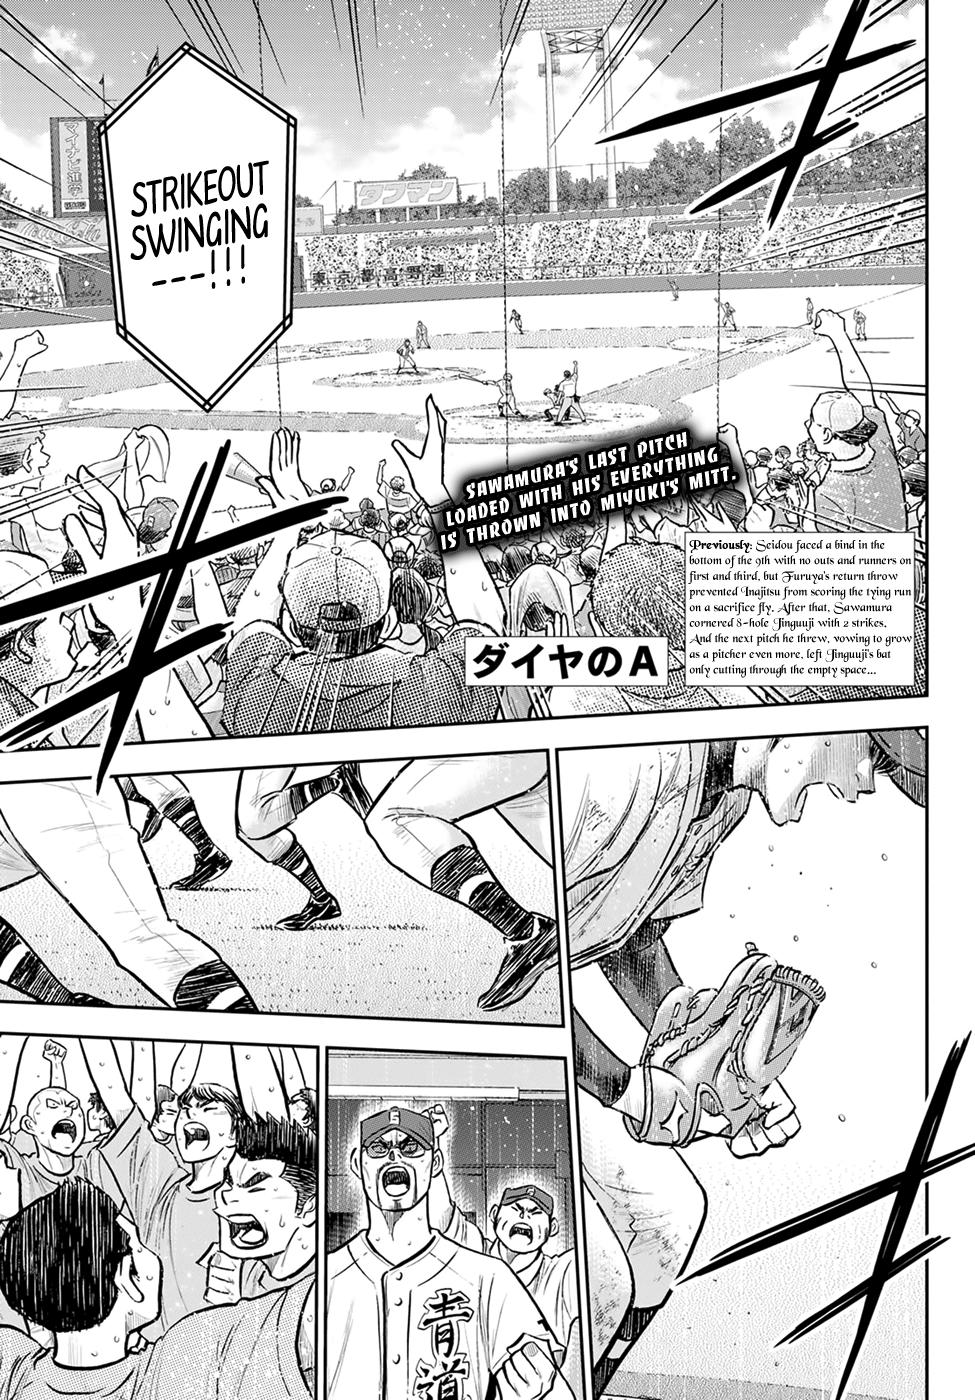 Read Daiya No A - Act Ii Chapter 234: The Ideal Ace on Mangakakalot